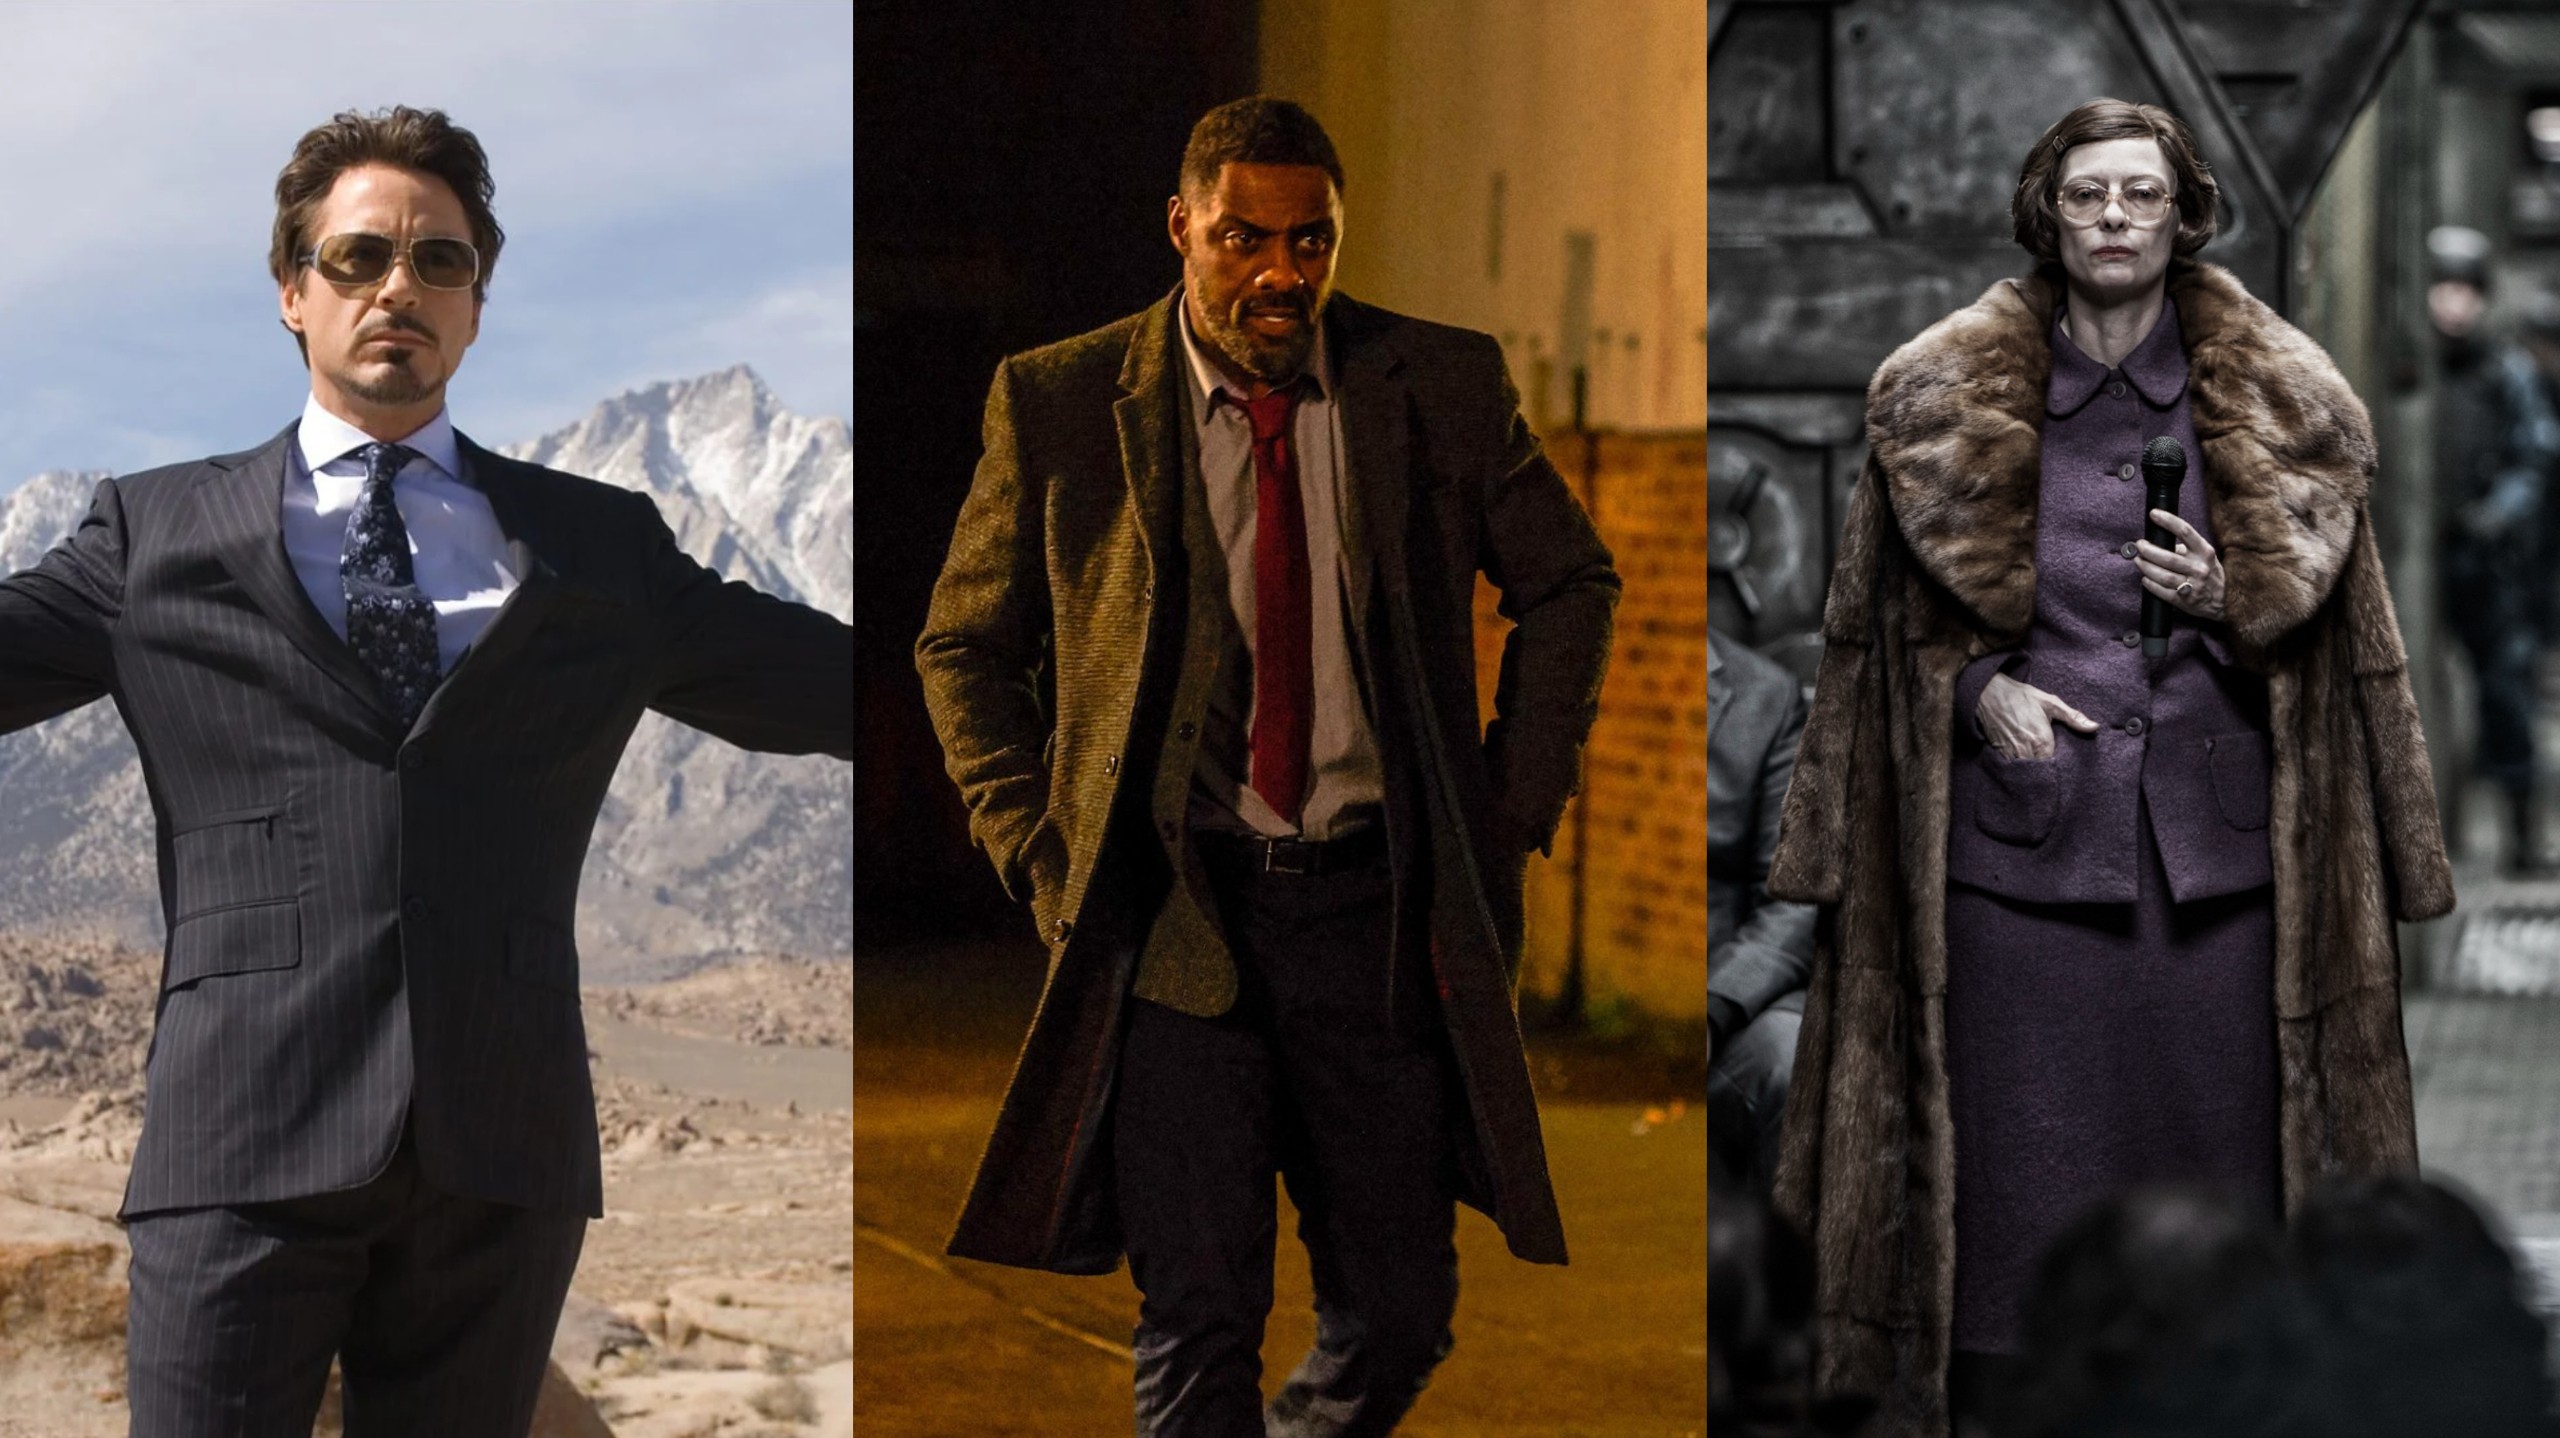 15 Actors Who Should Be the Next James Bond Villain